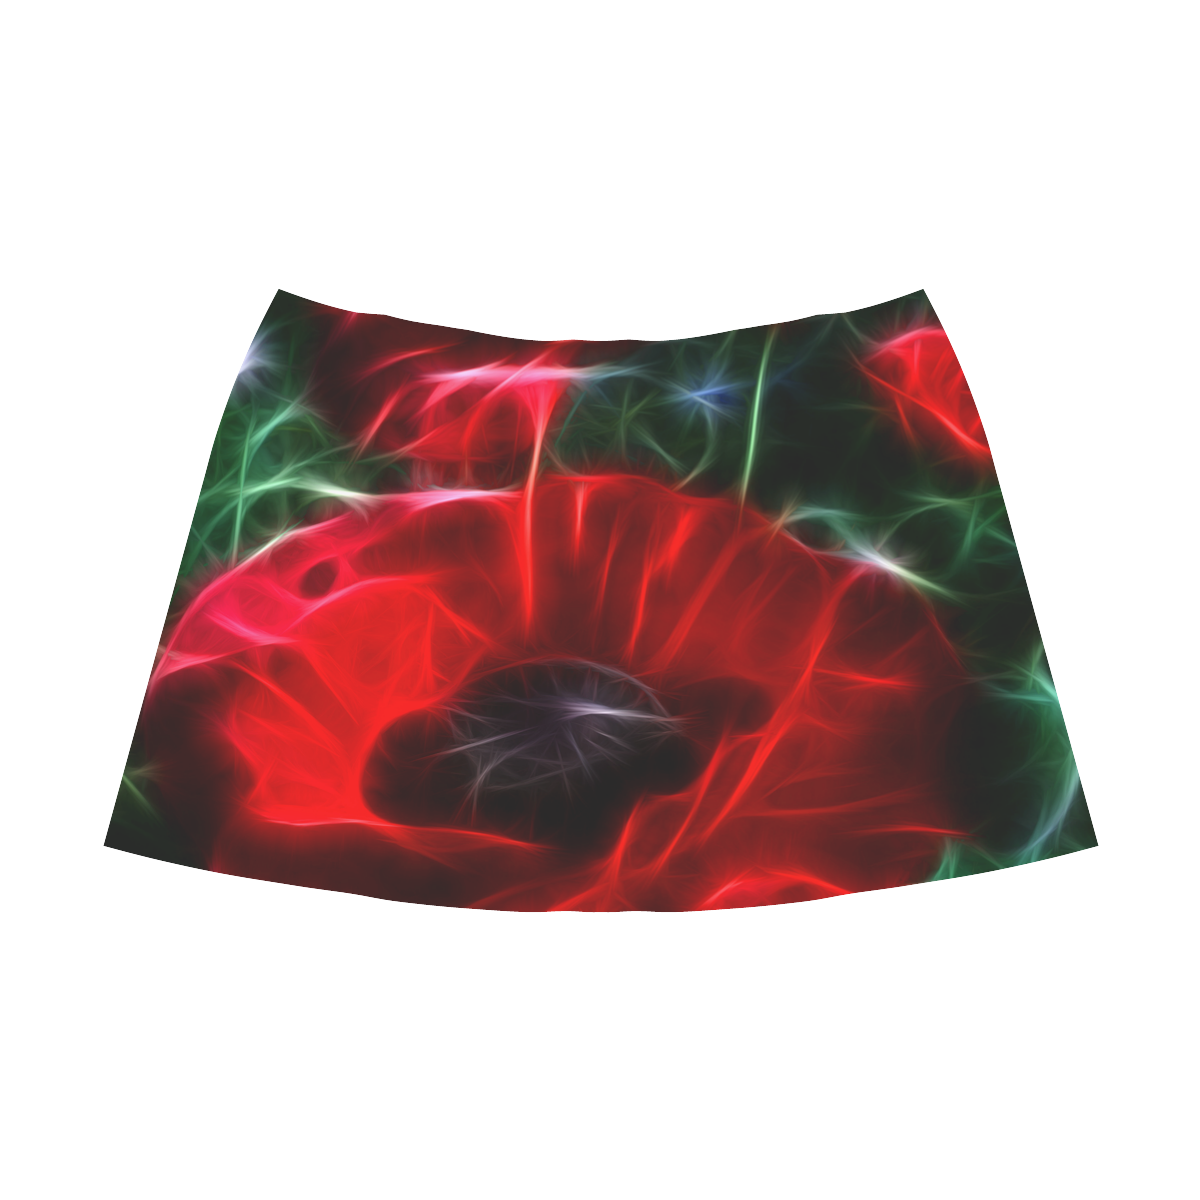 Wonderful Poppies In Summertime Mnemosyne Women's Crepe Skirt (Model D16)